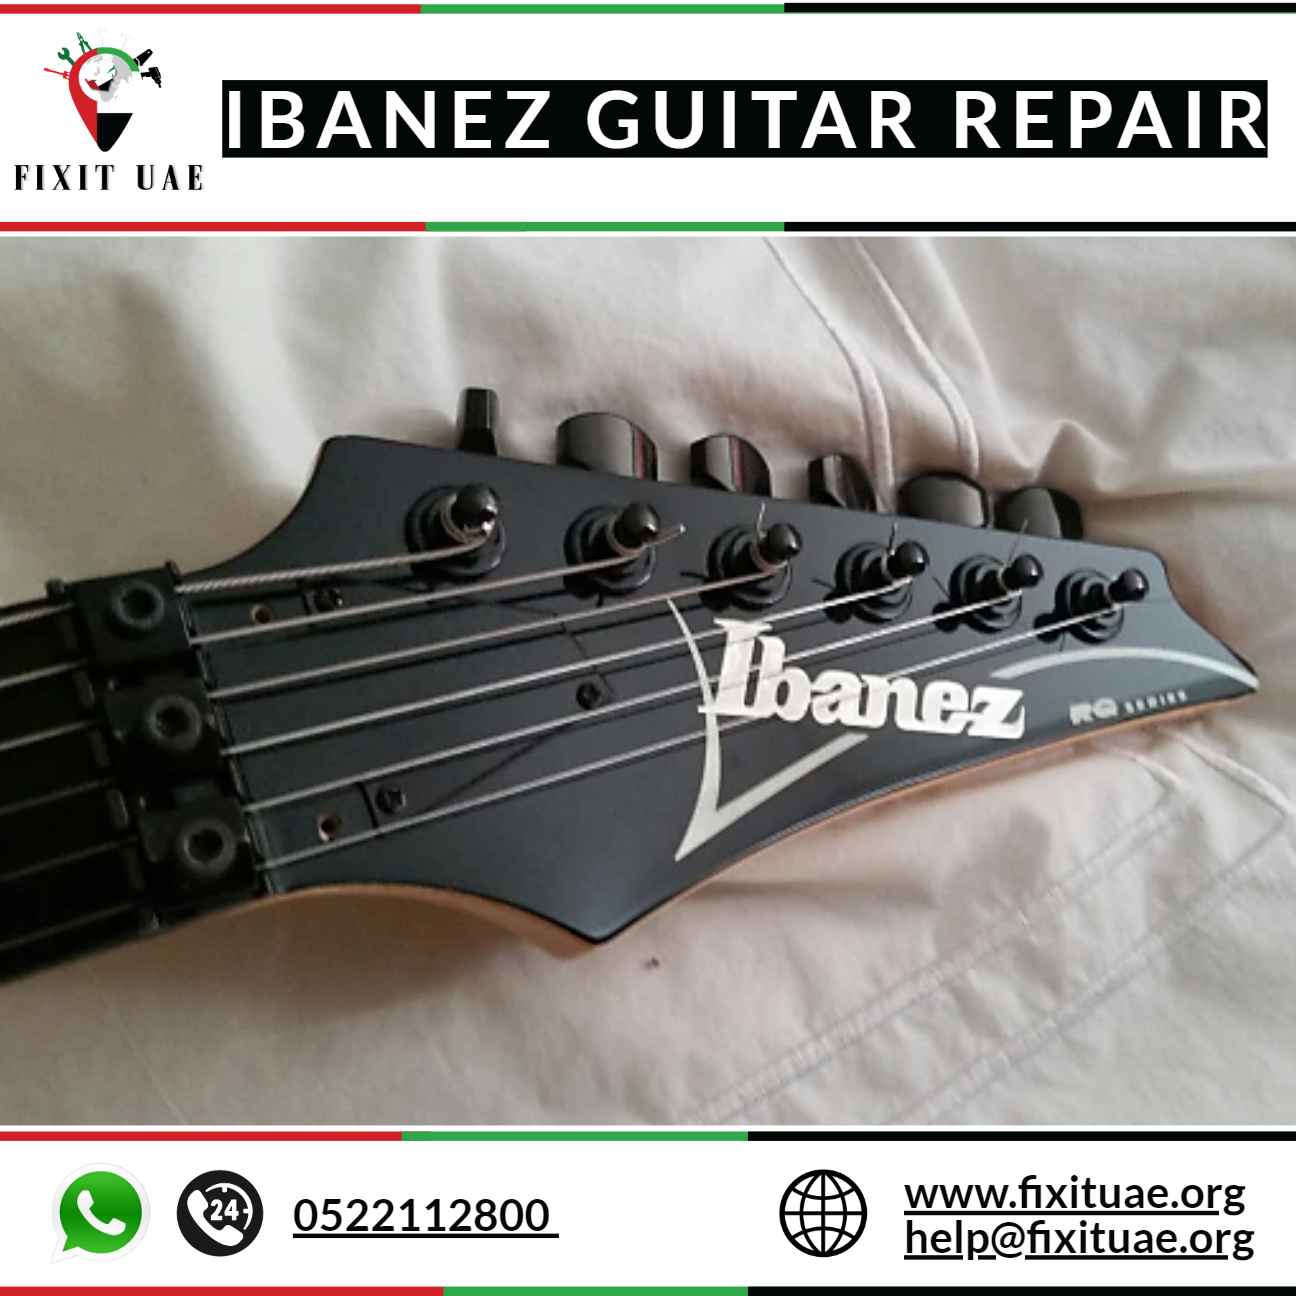 Ibanez guitar repair